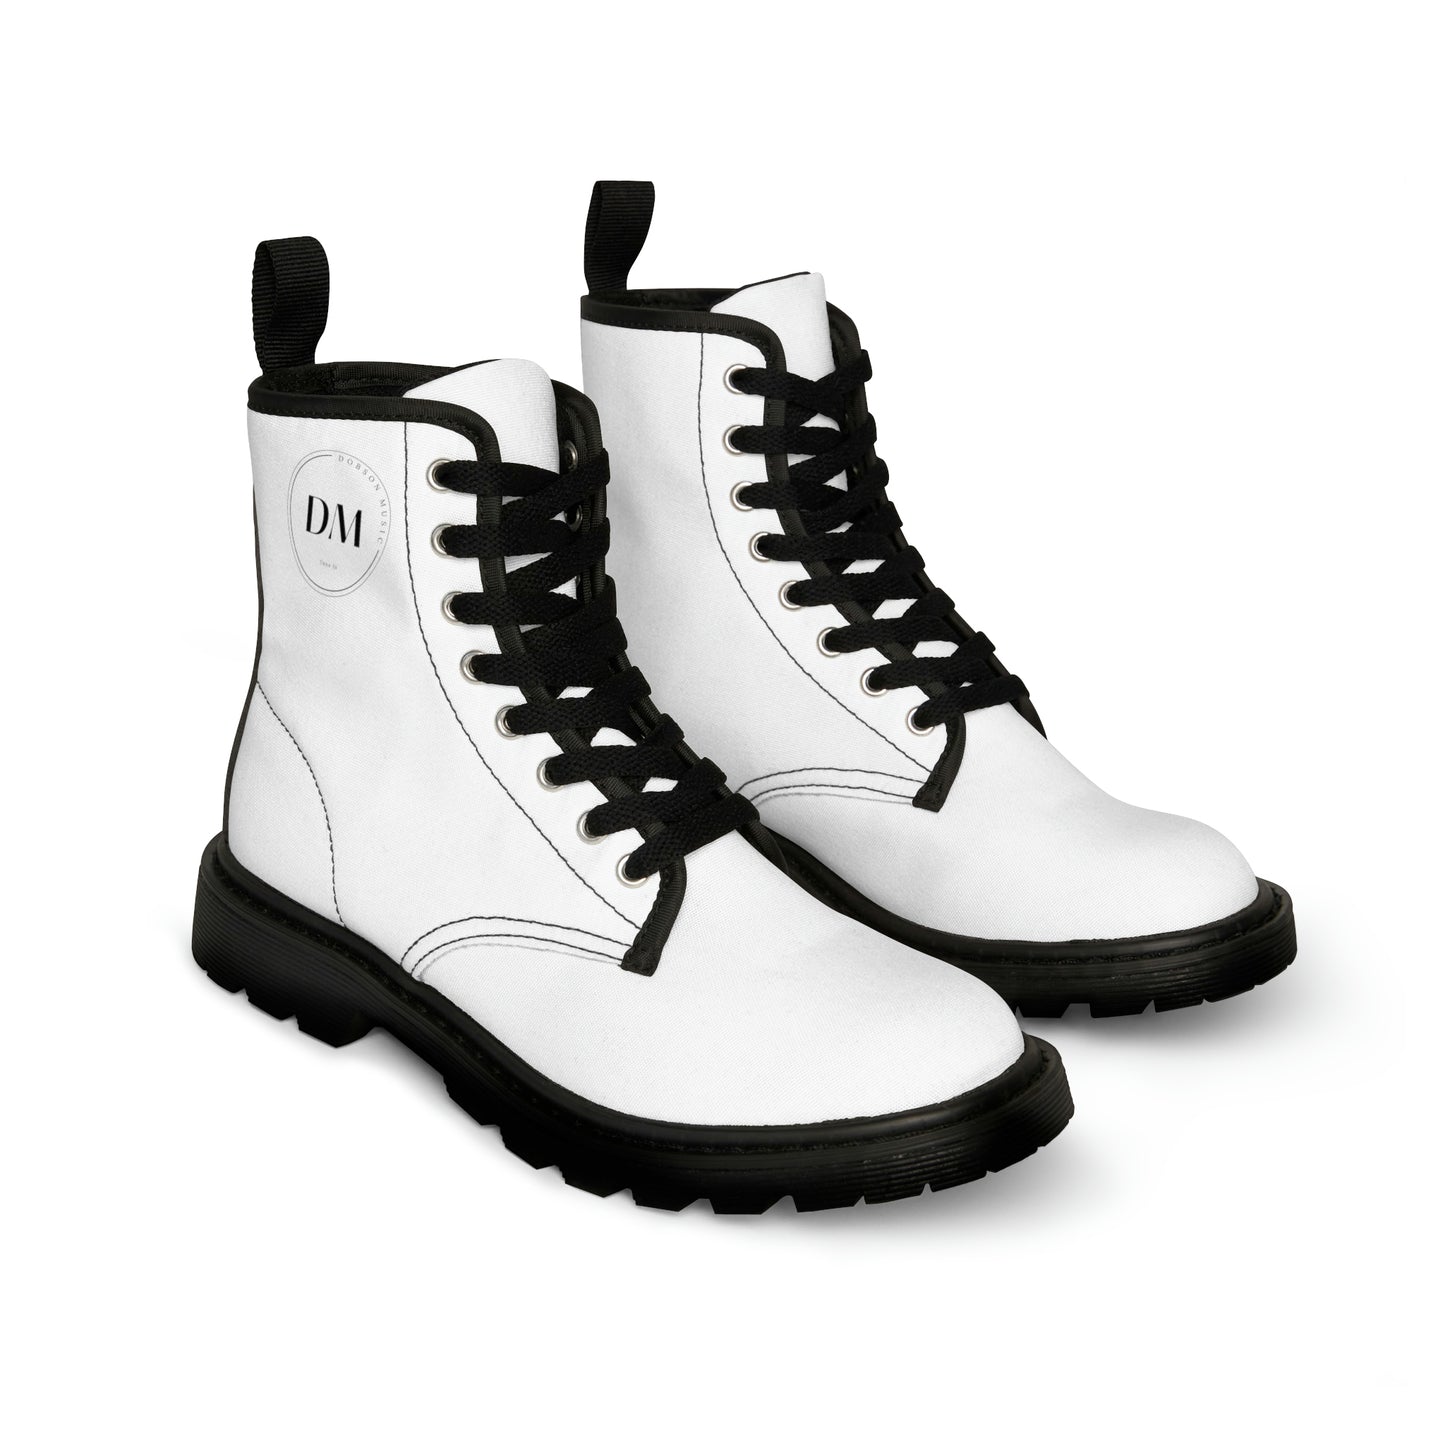 DM Women's Canvas Boots - White